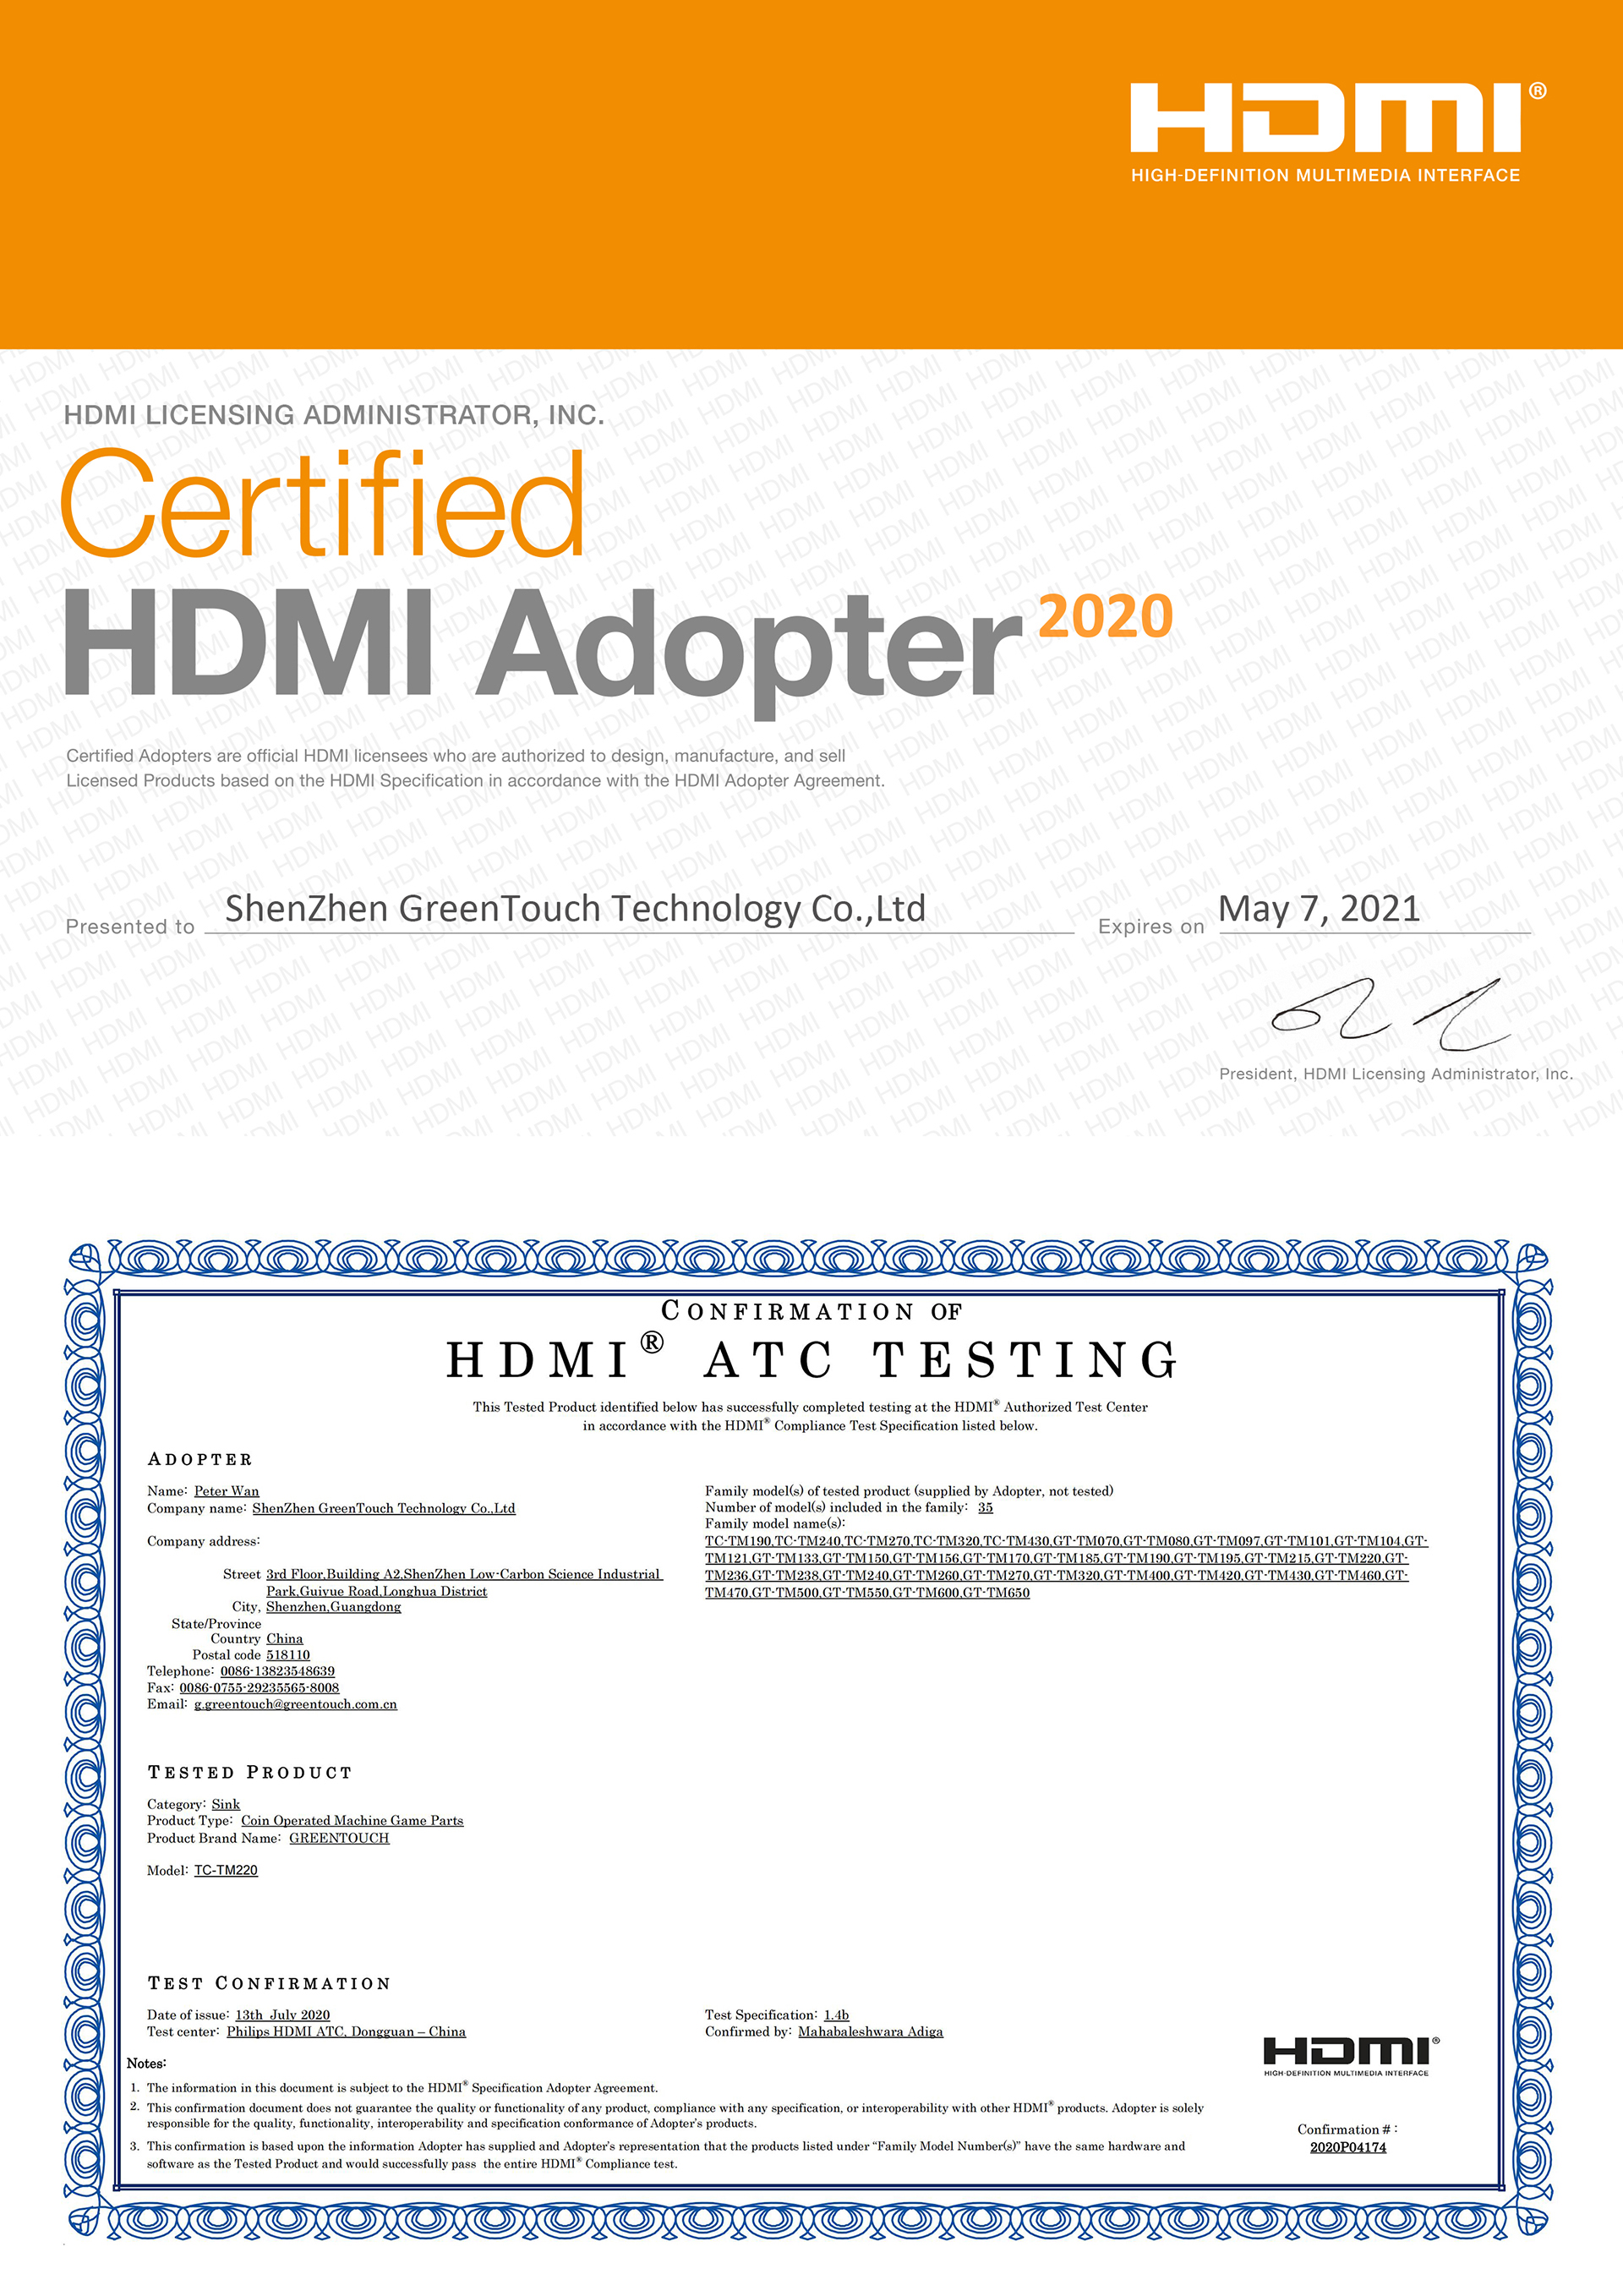 Certificate of HDMI